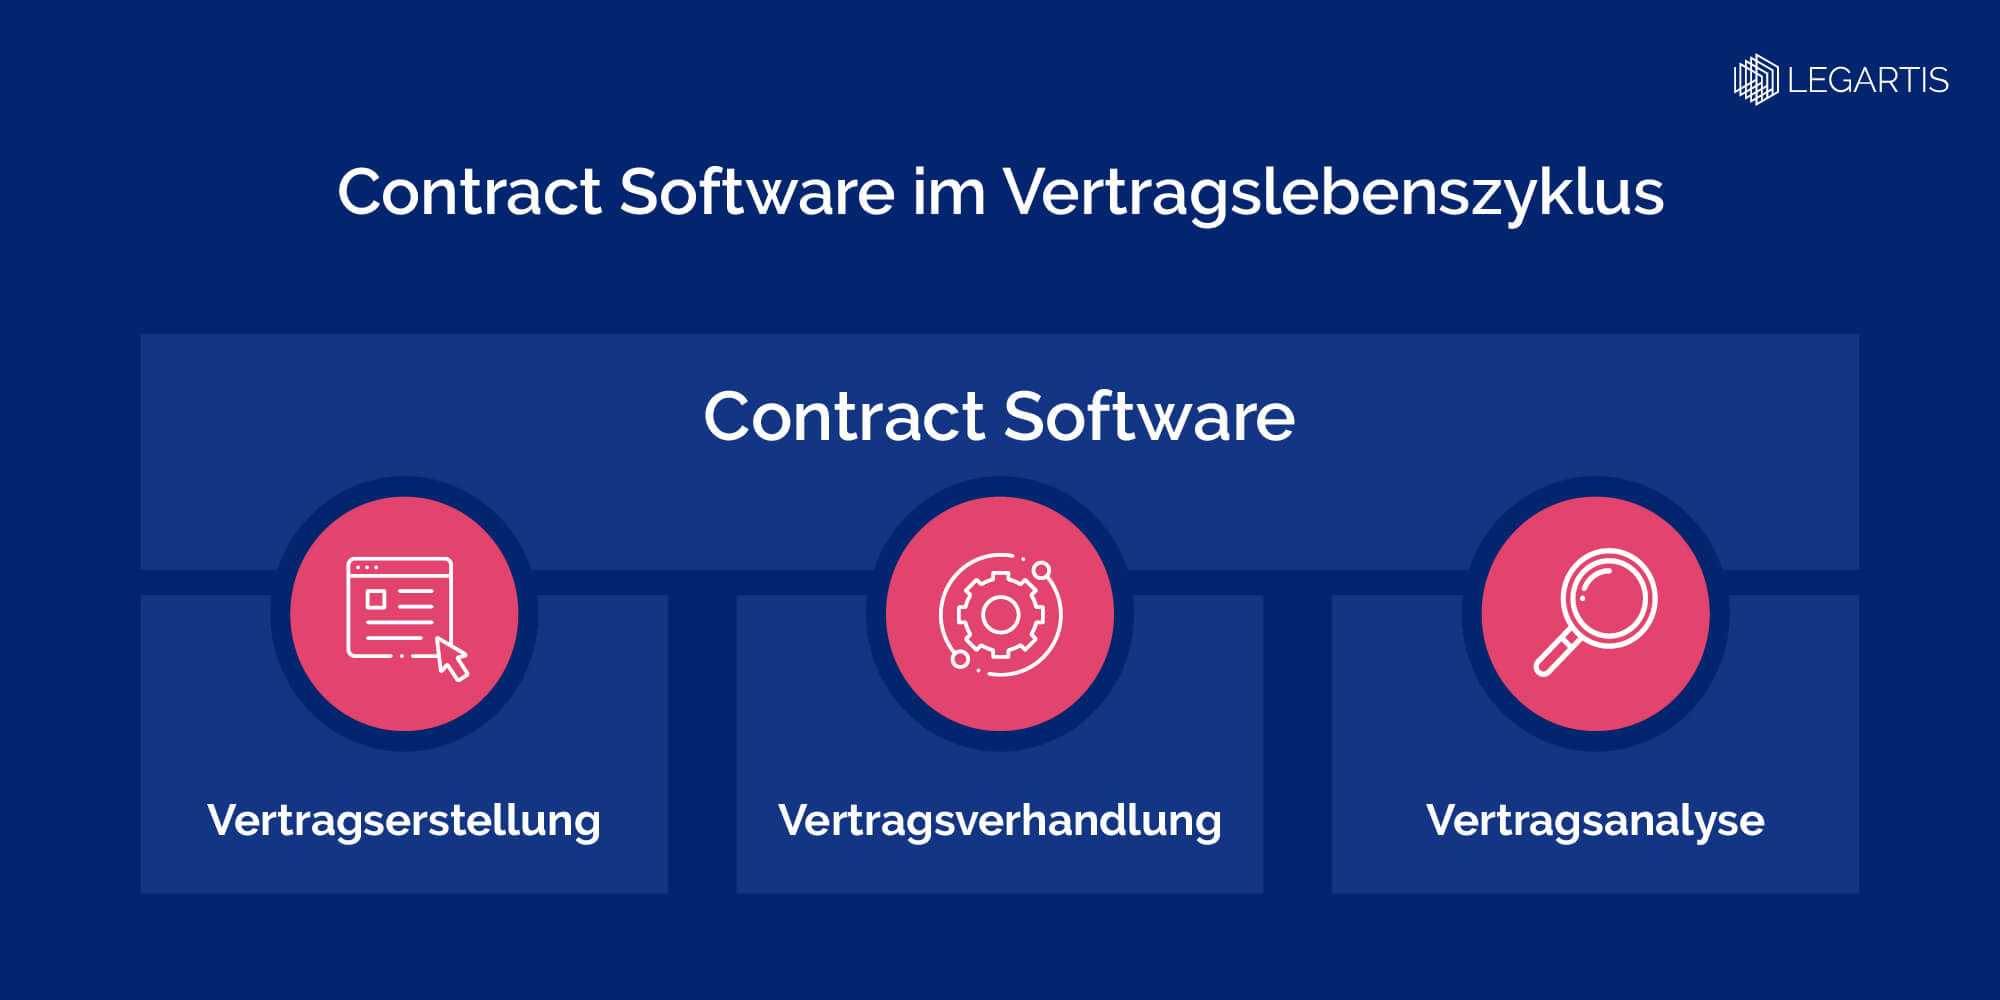 Legartis-Contract Software im Vertragslebenszyklus-Infographic-DE